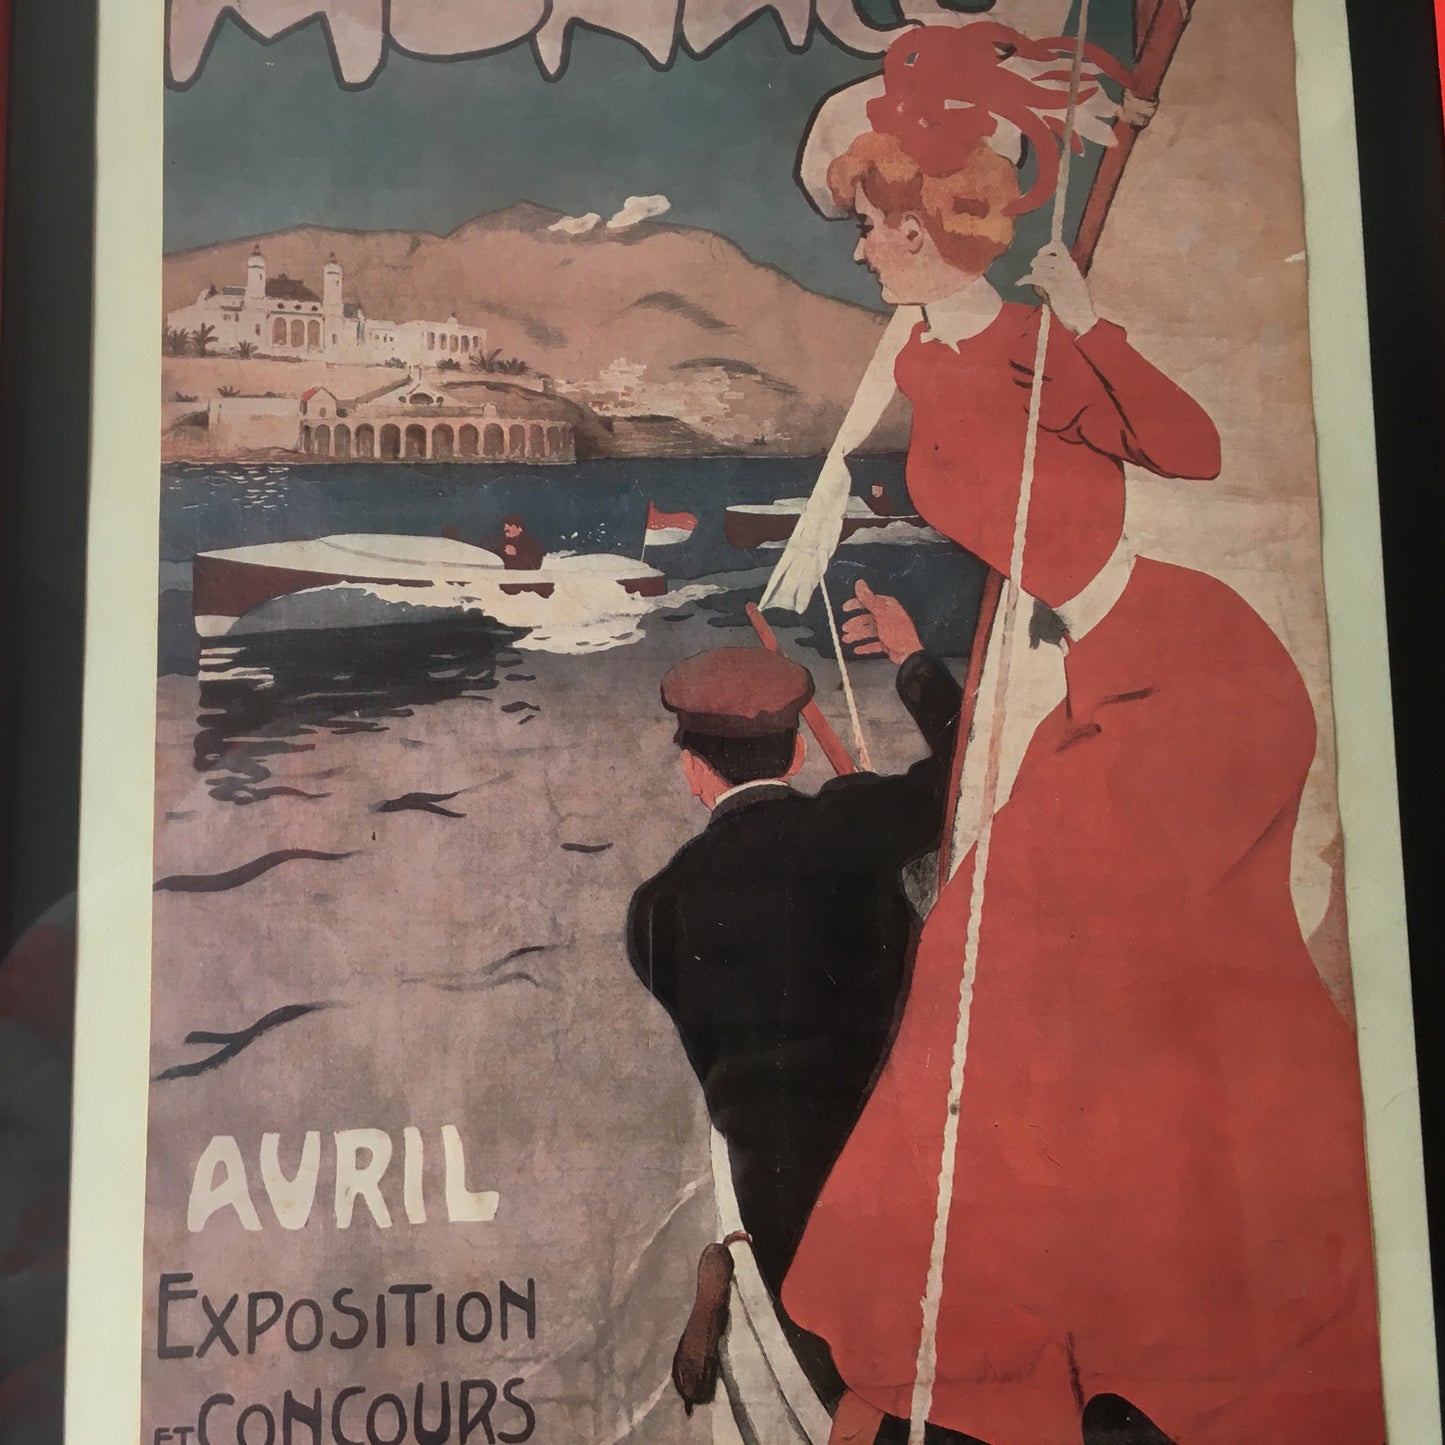 Monaco, Pubblicità / Stampa Avril Monaco Exposition et Concours de Canots Automobiles.